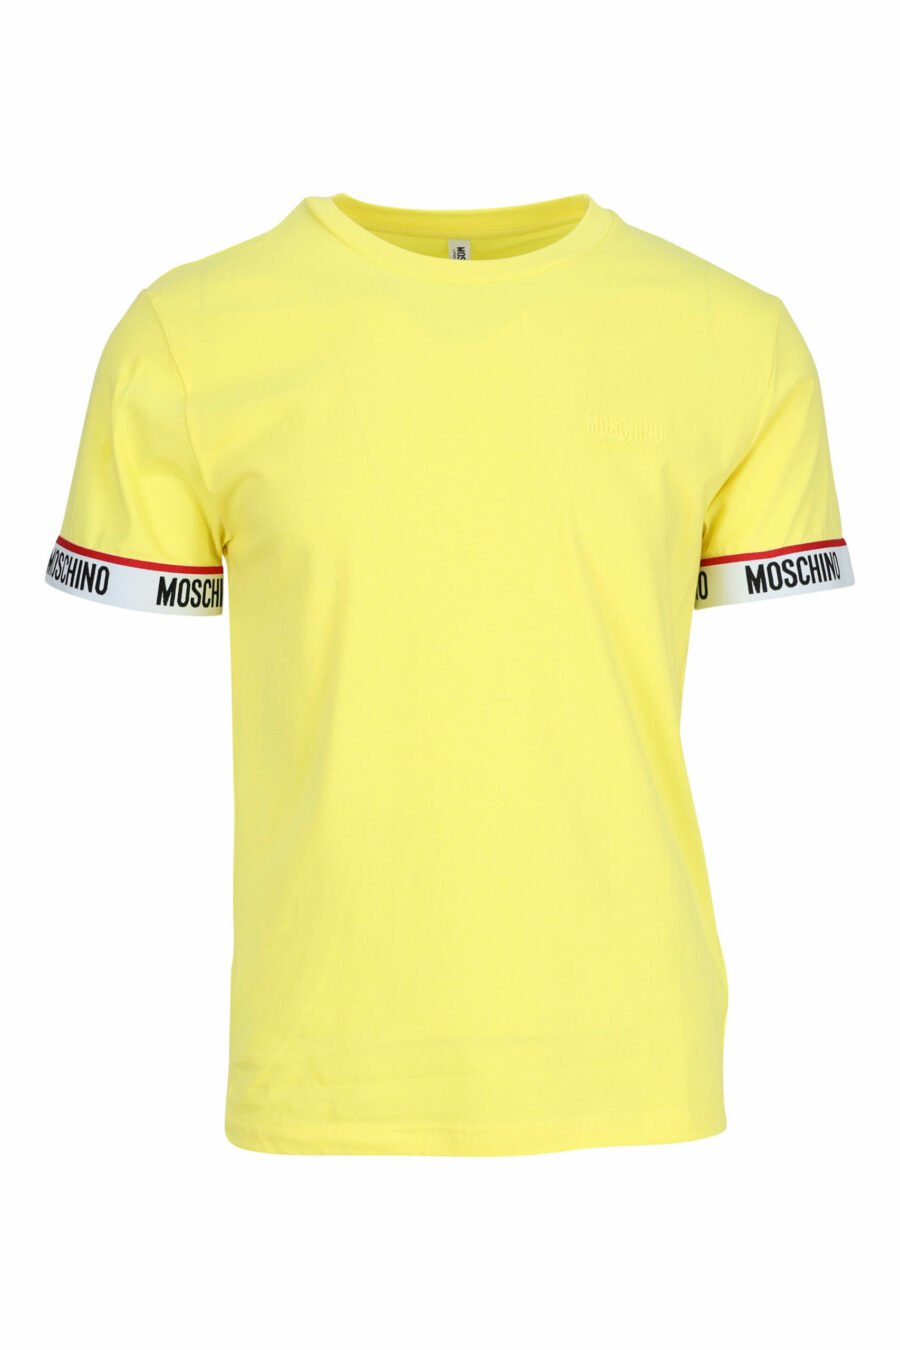 T-shirt jaune avec logo blanc sur les manches - 667113604671